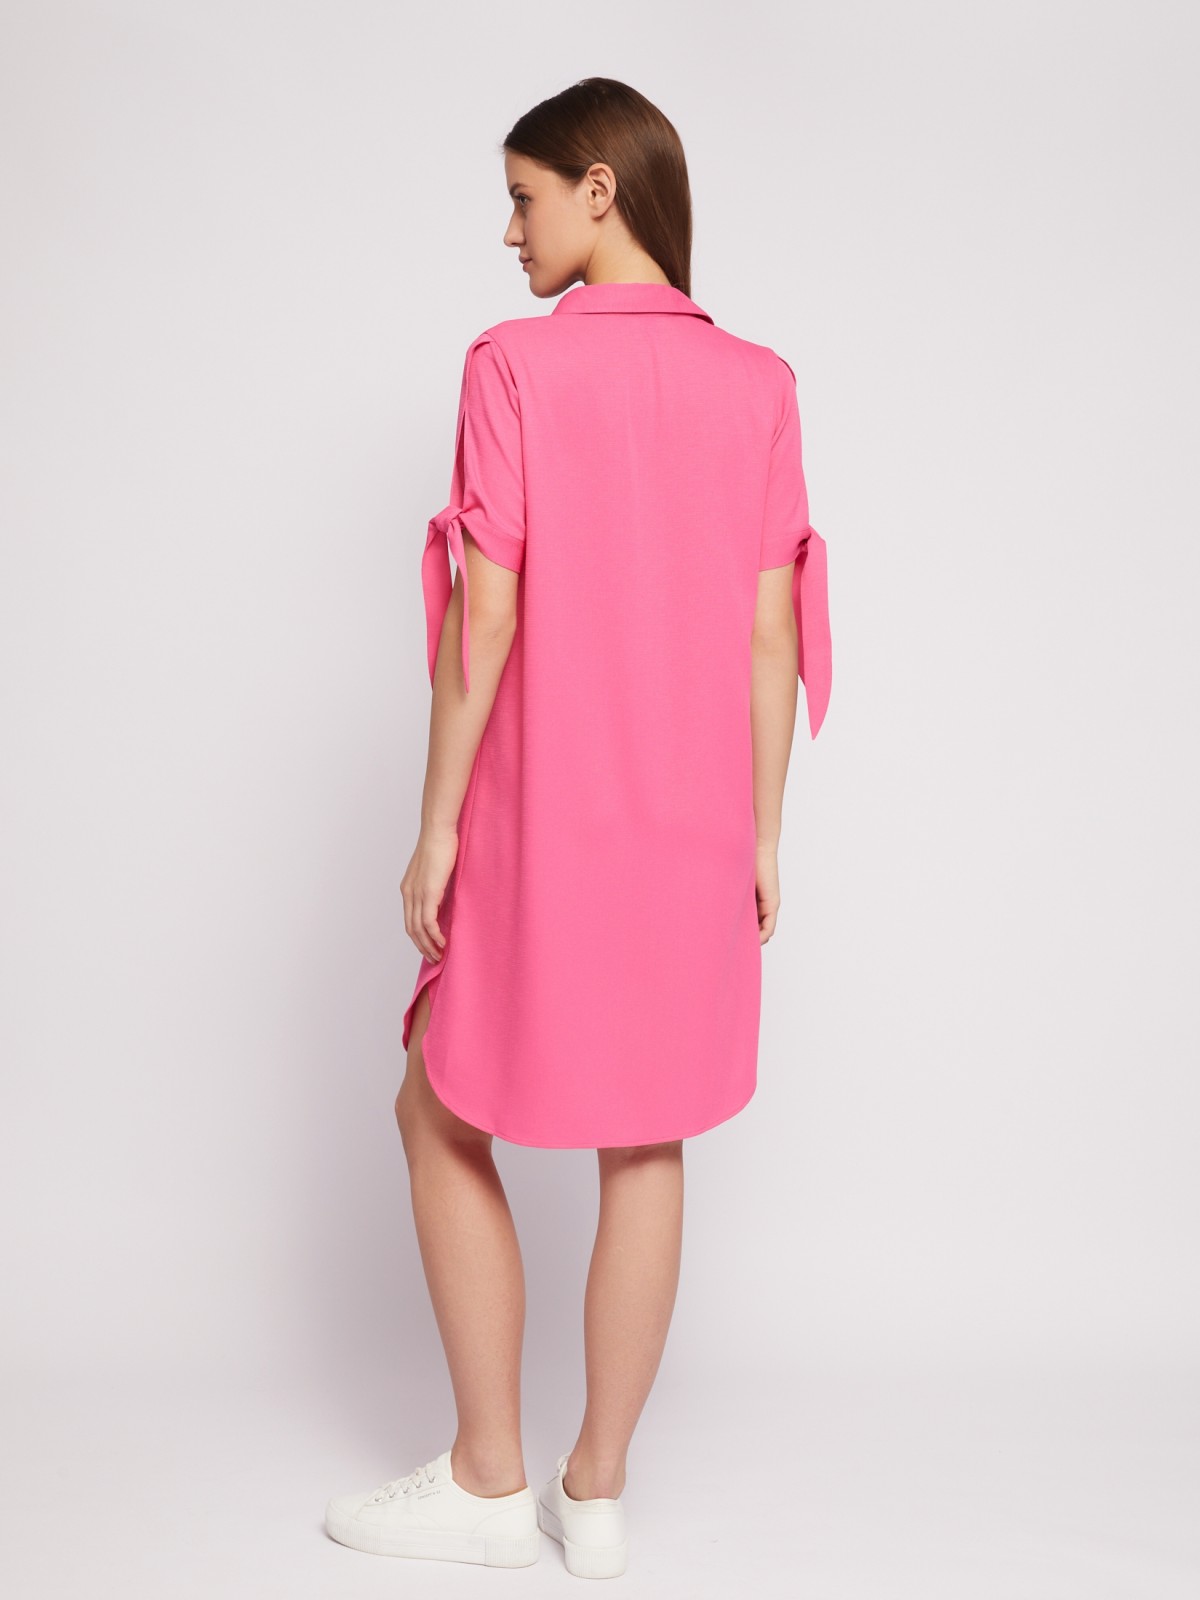 Платье-рубашка мини с акцентом на рукавах zolla 024218239333, цвет фуксия, размер S - фото 6